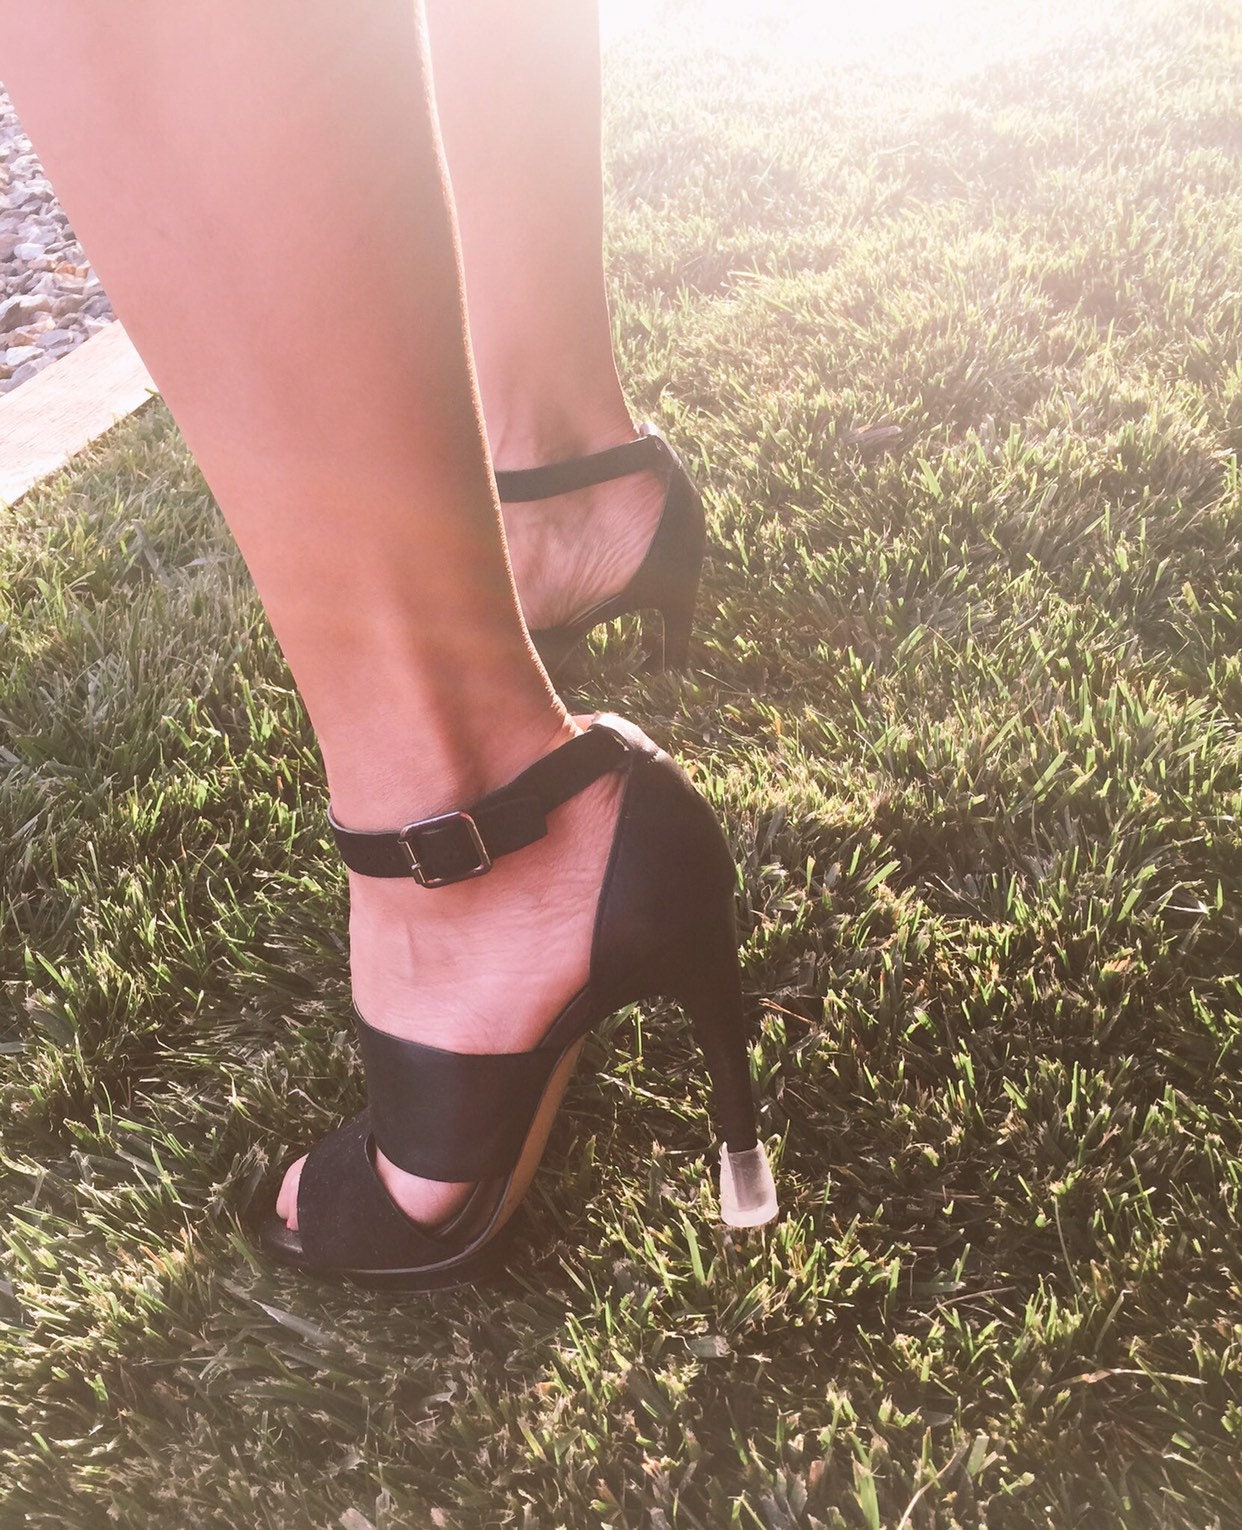 Grass Heel Protectors For Ladies shoes | Buy heel protectors online